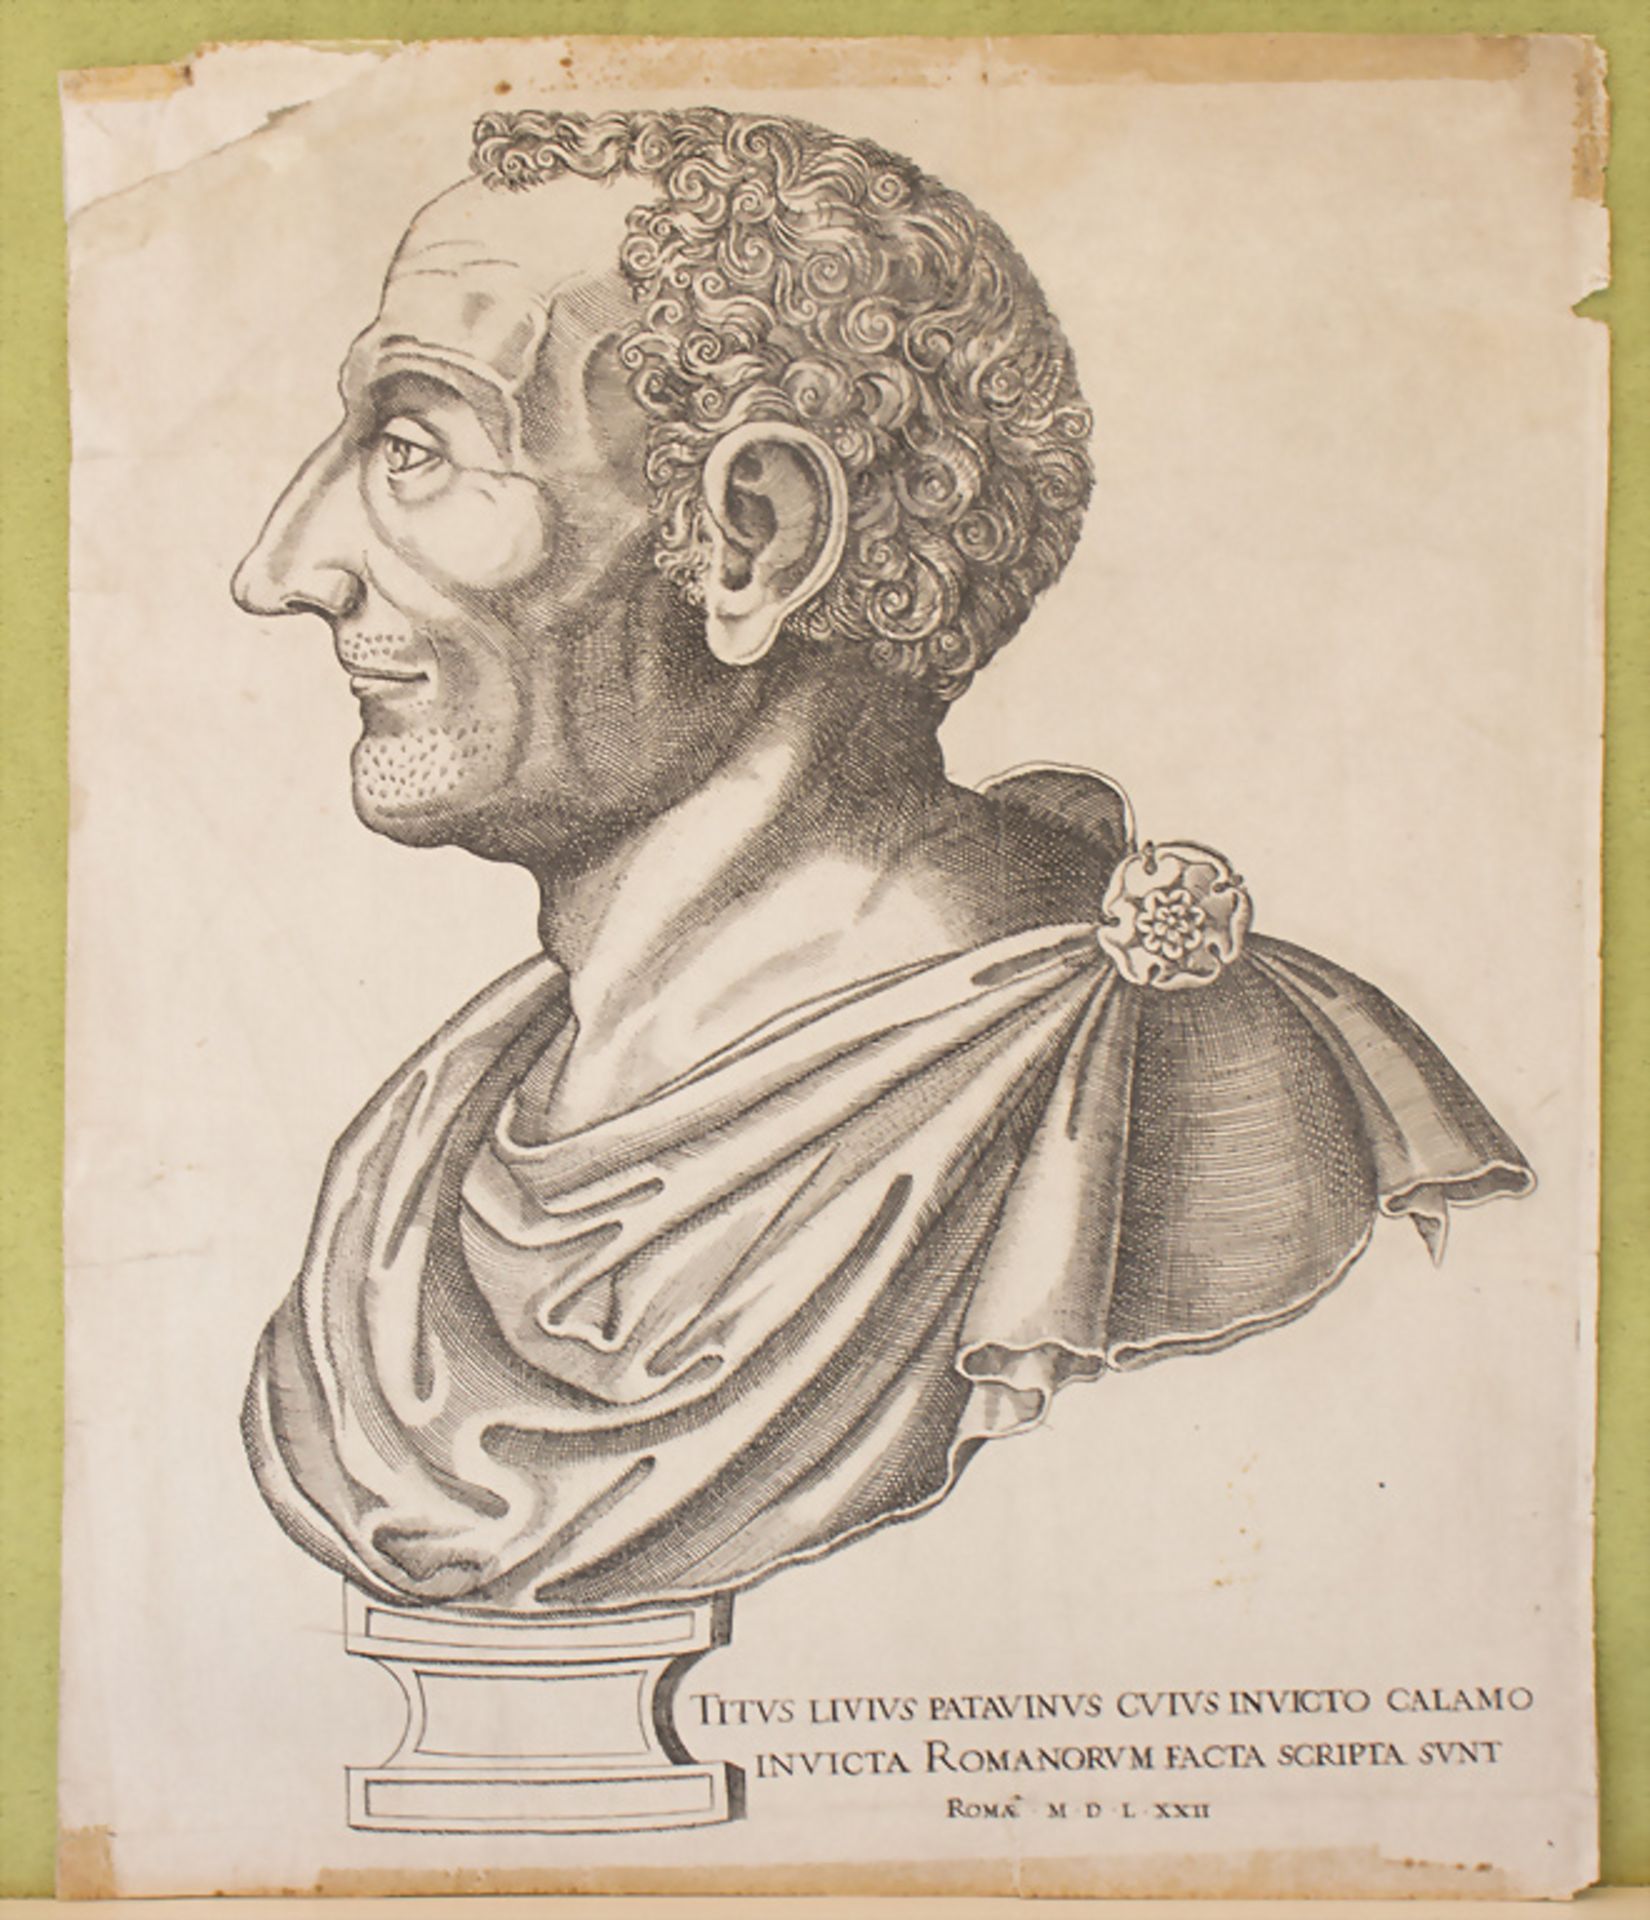 Stich von Kaiser Titus Livius / An engraving of Emperor Titus Livius, Rom, Entwurf 1572